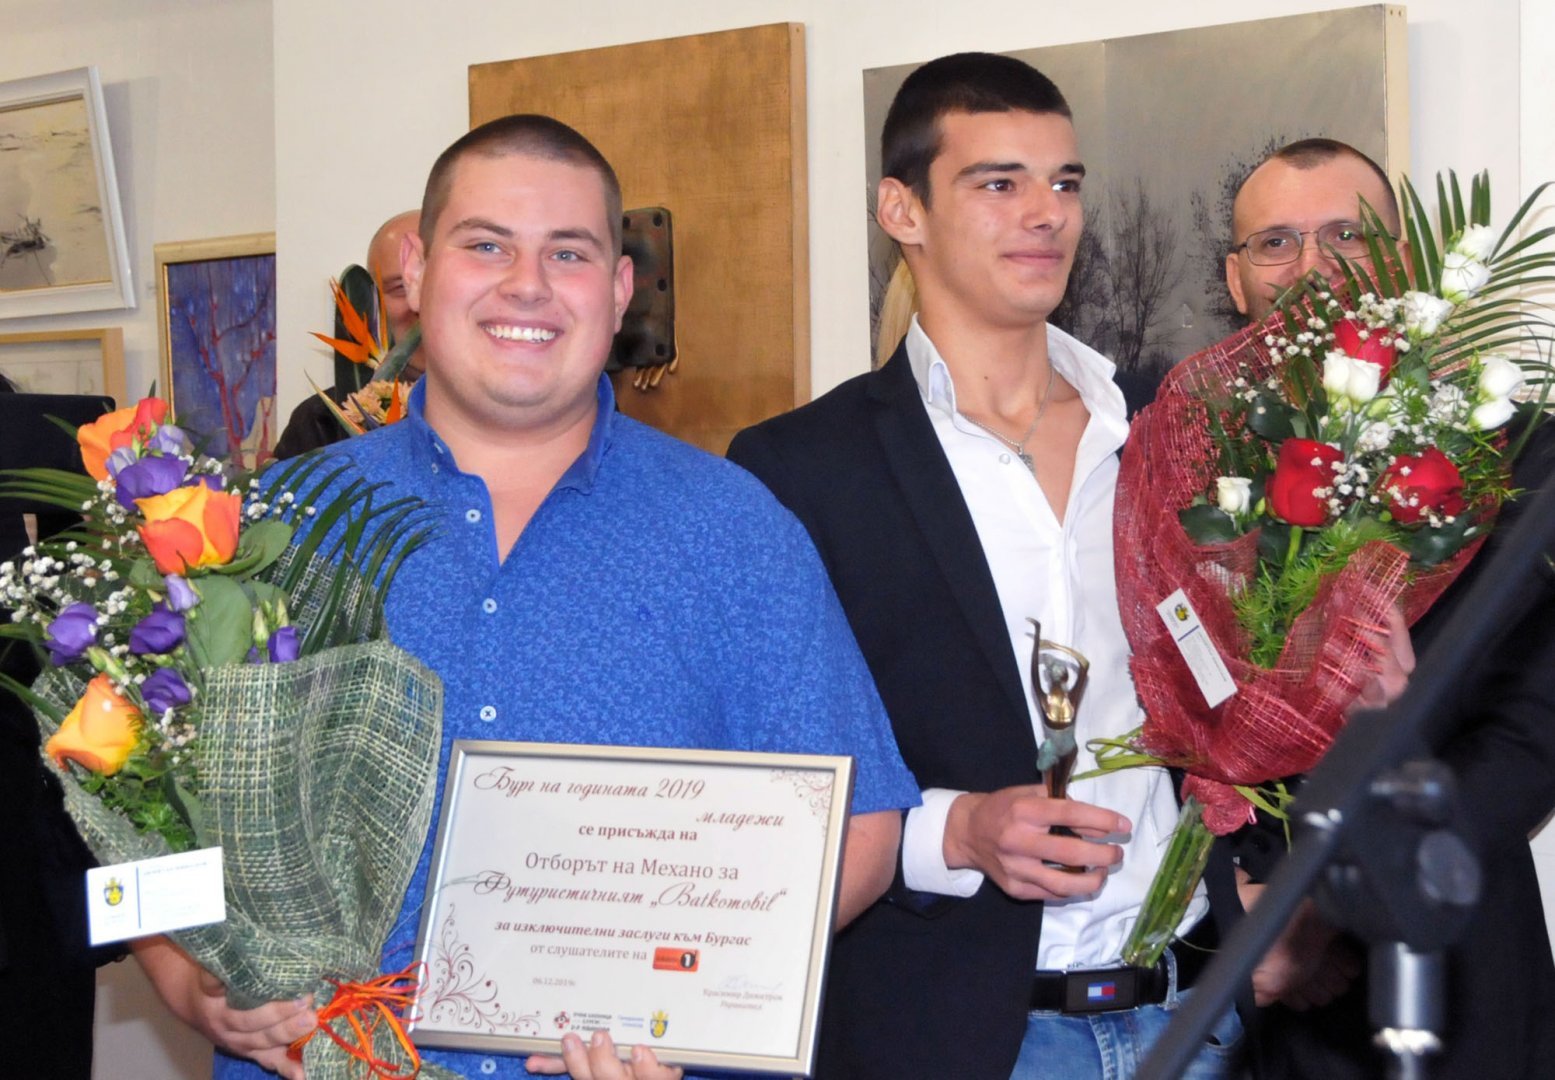 Учениците от Механото изработиха електромобил и получиха награда в кампанията Бург на годината през 2019. Снимка Архив Черноморие-бг